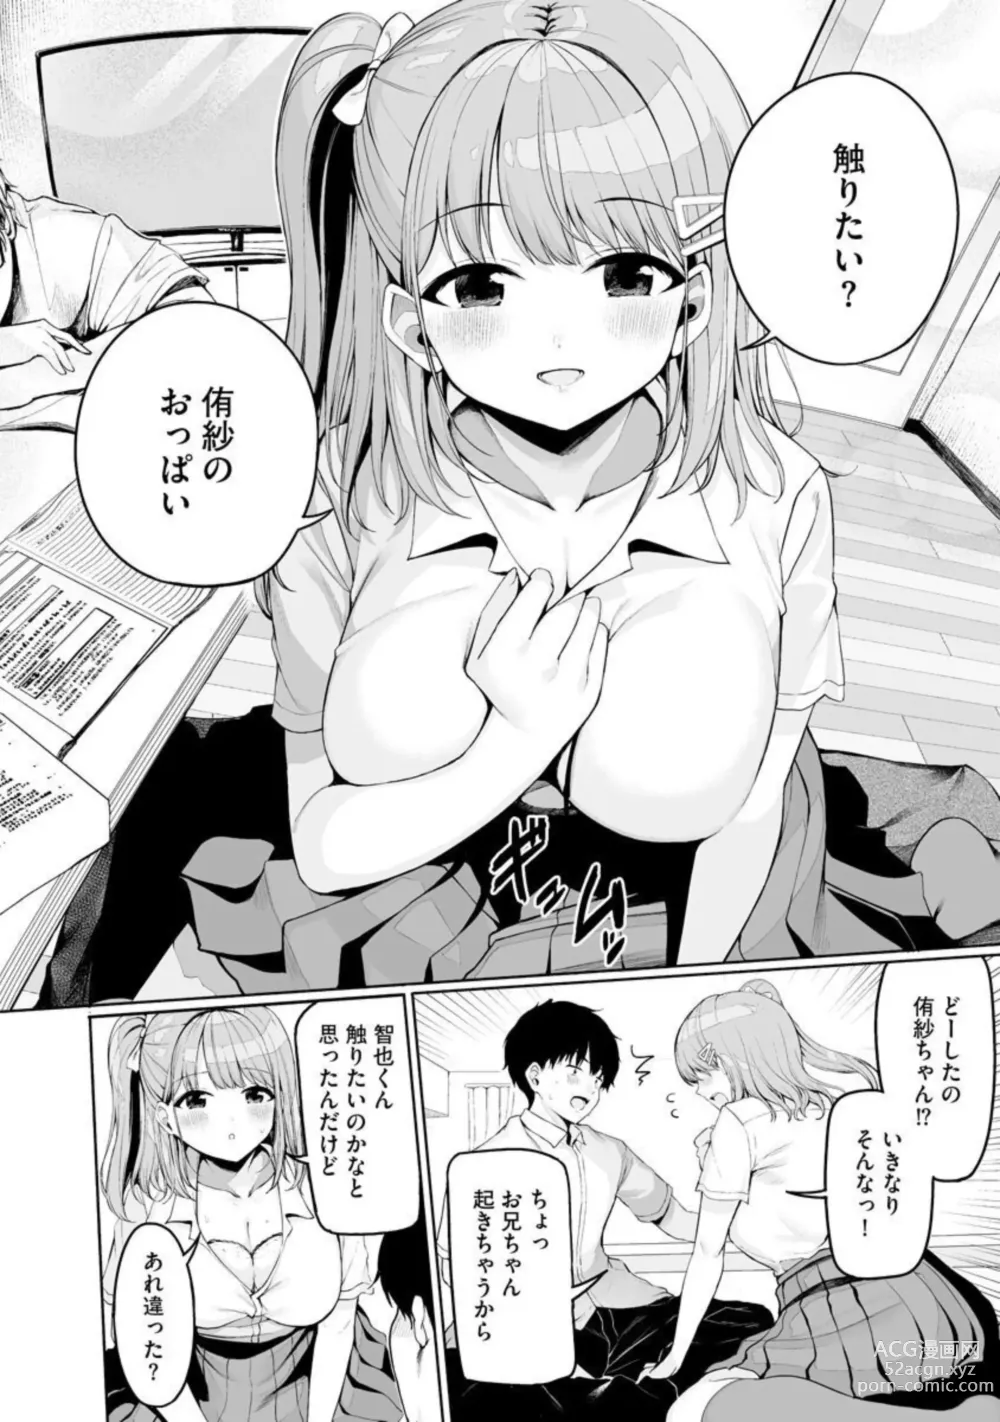 Page 8 of manga Naisho Goto 1